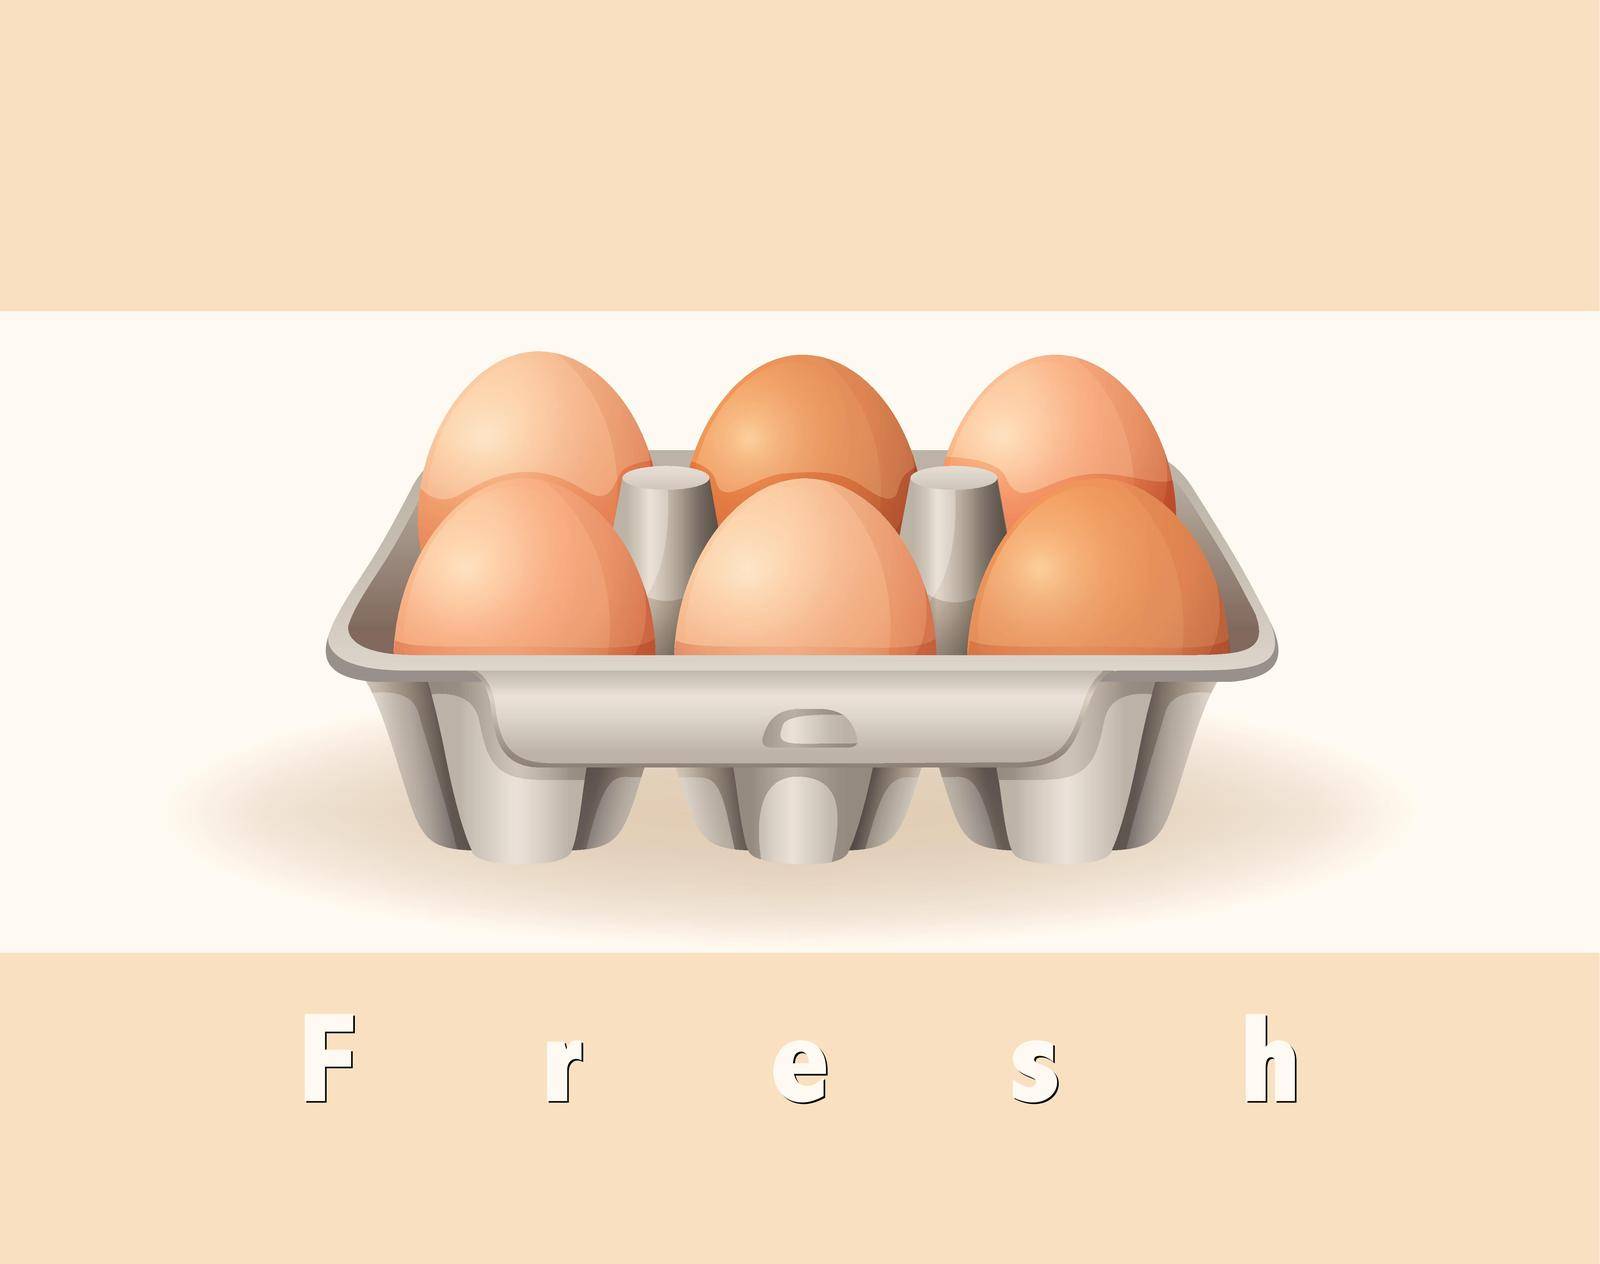 Six fresh eggs in the box